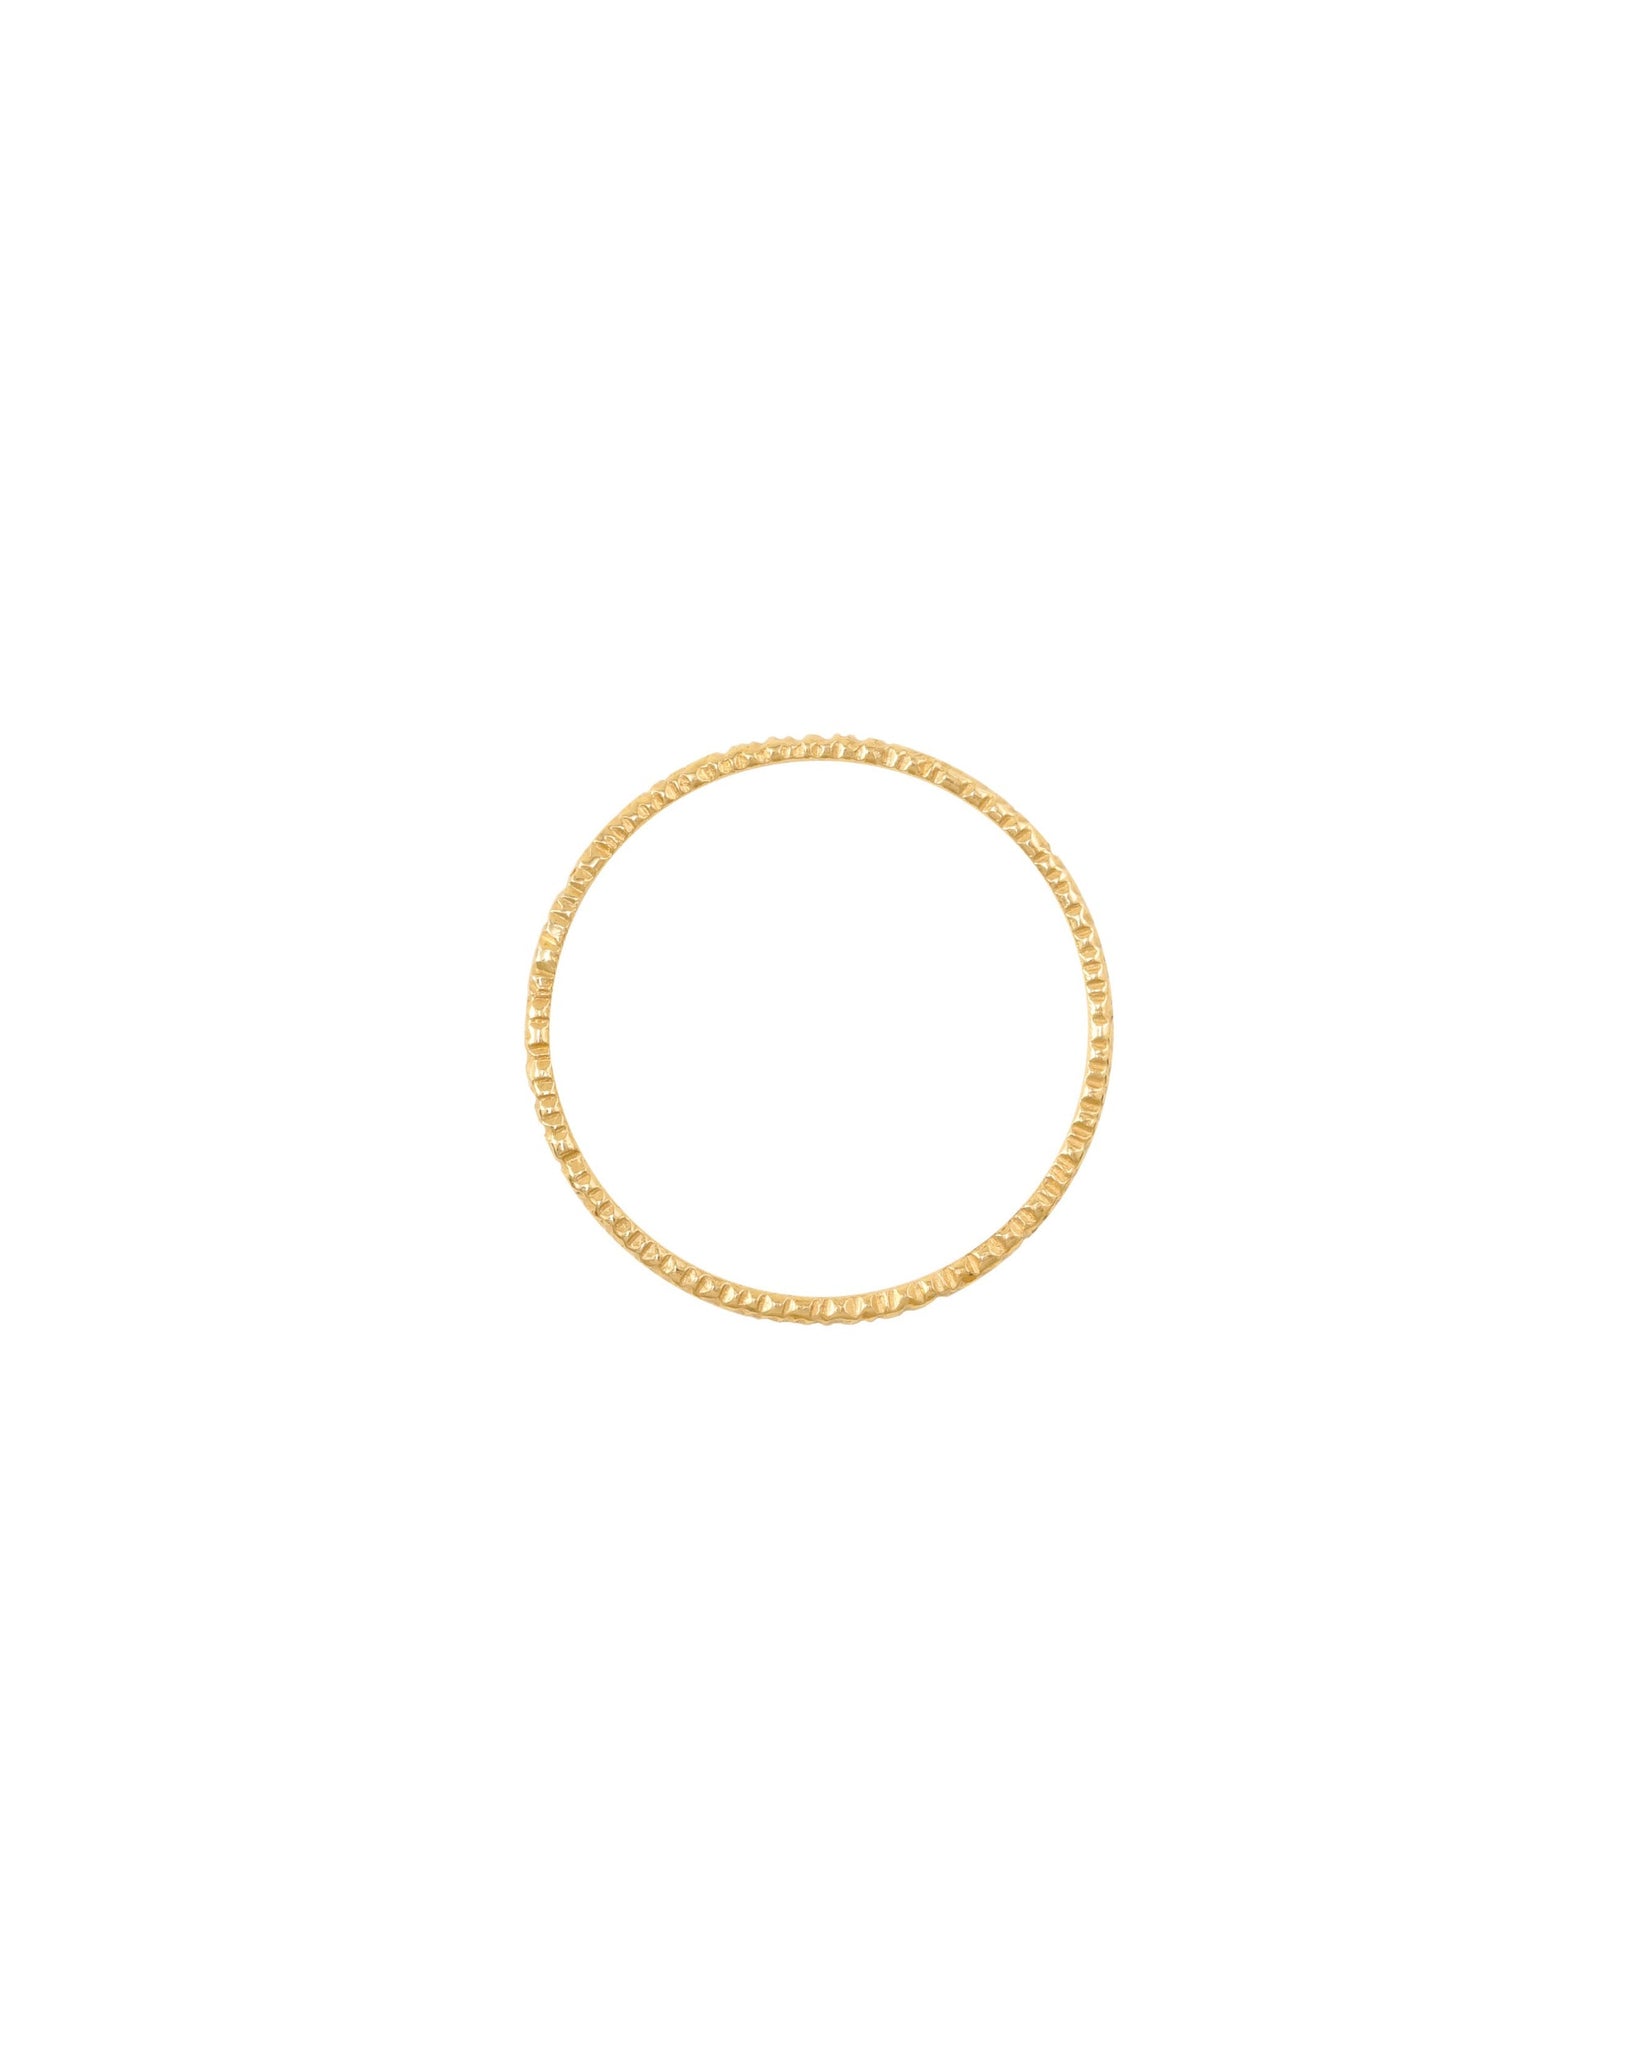 Gold base ring